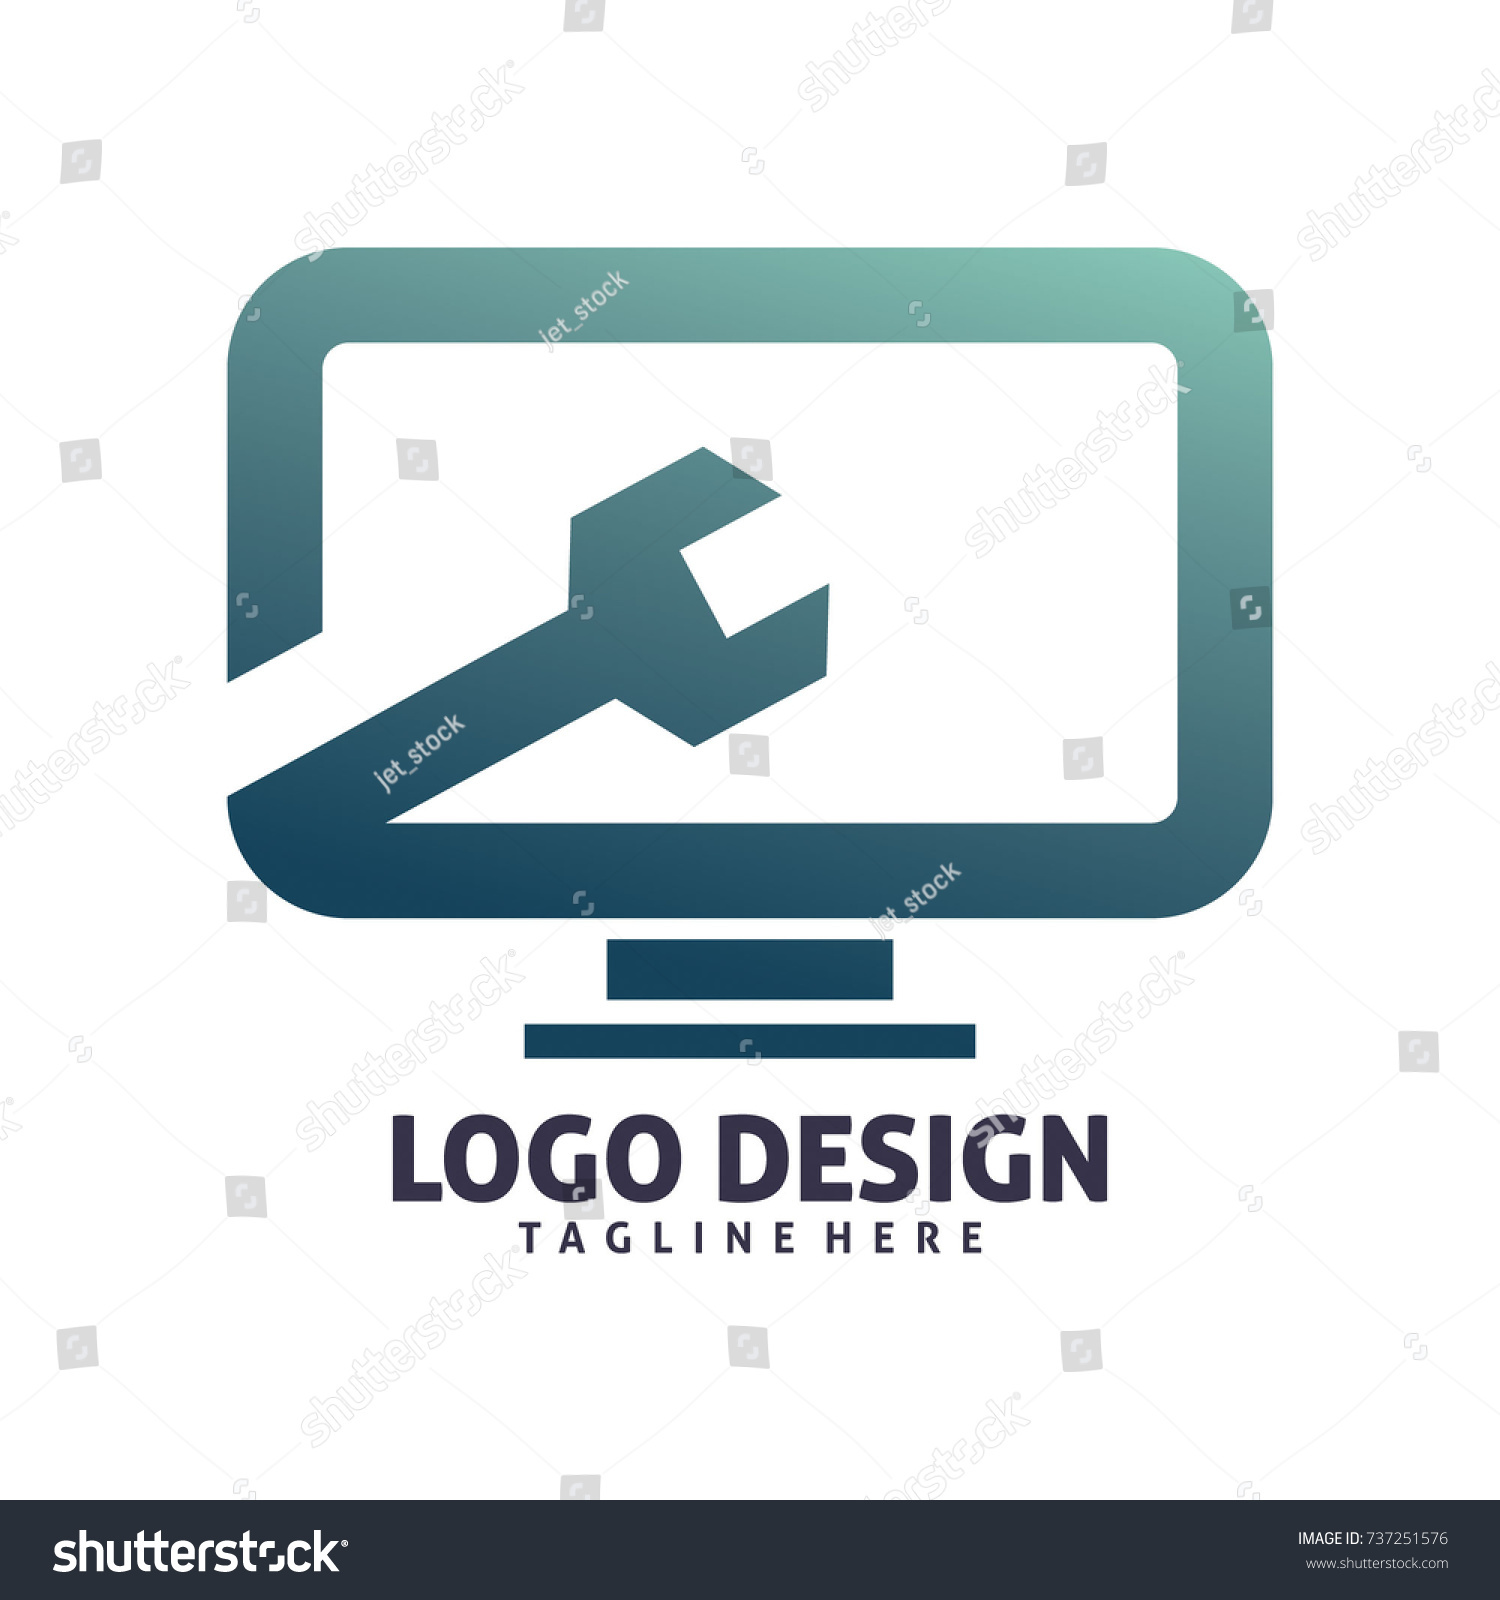 Computer Repair Logo Design Stock Vector (Royalty Free) 737251576 ...